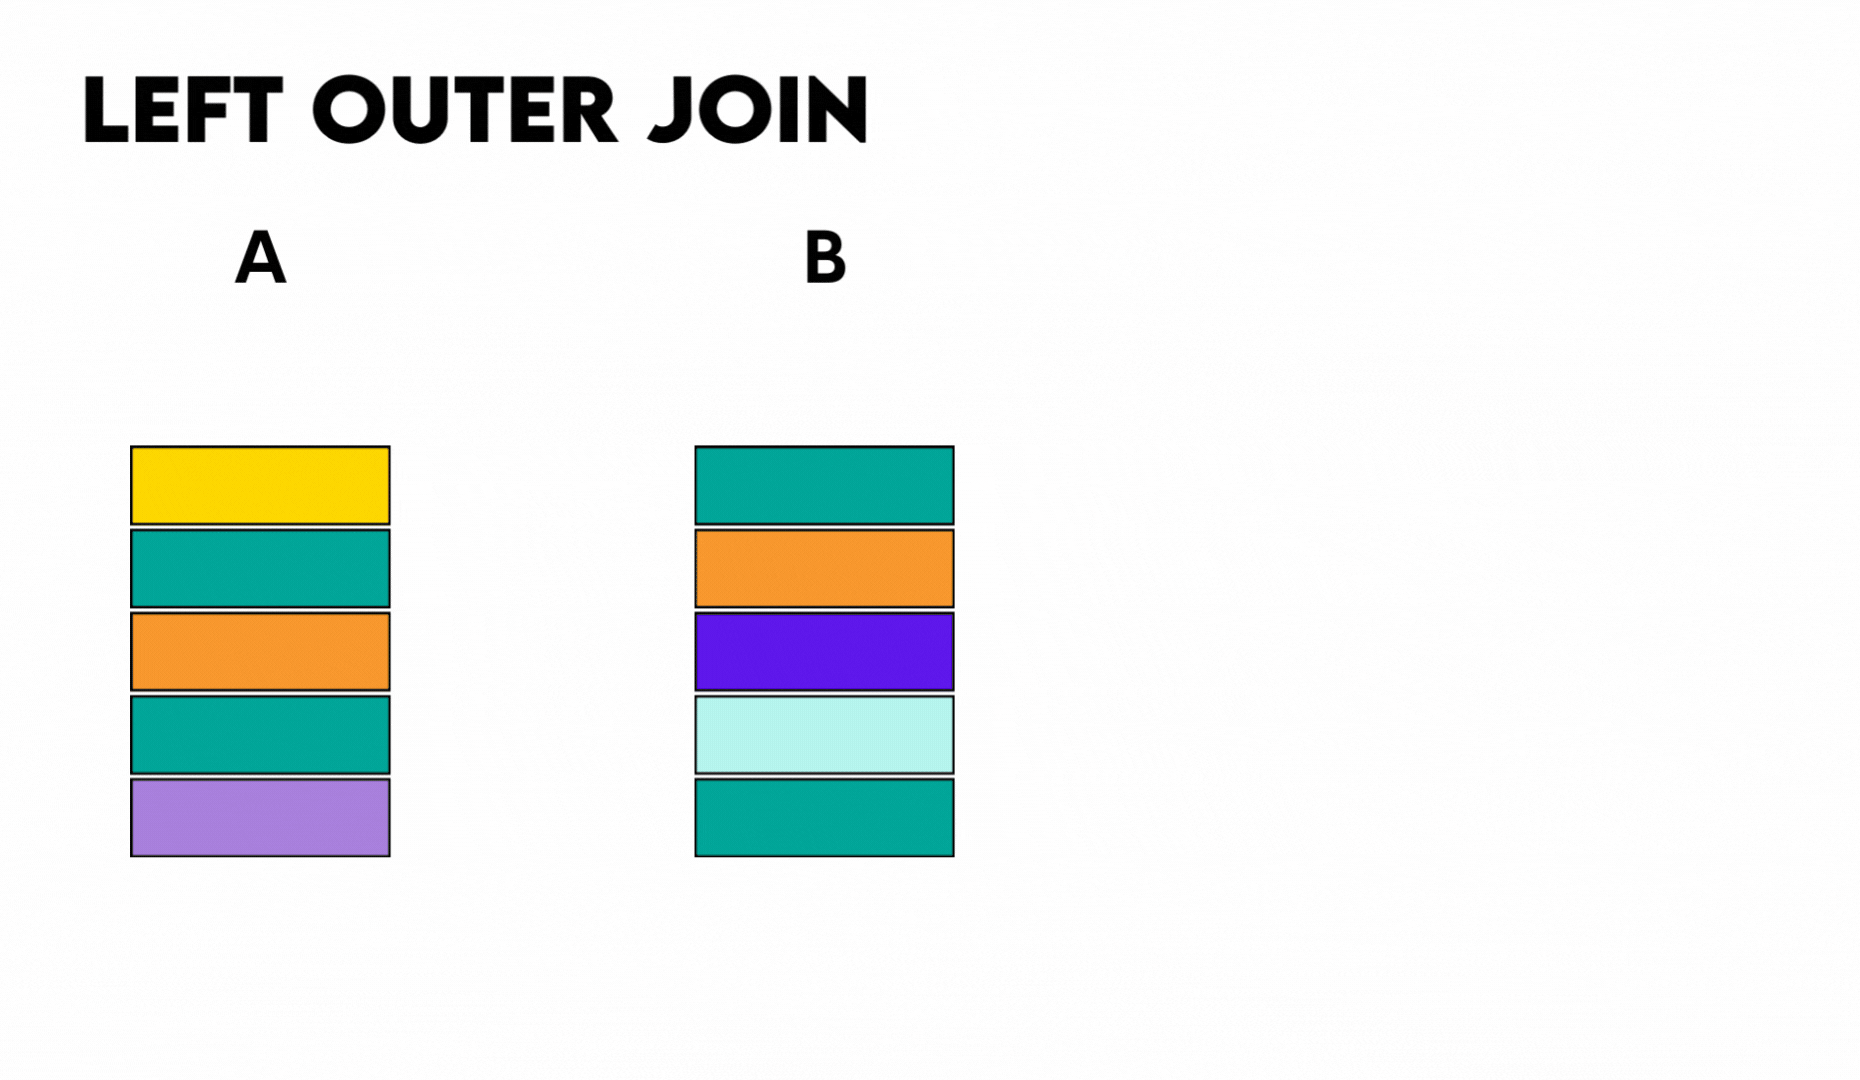 Left outer join vs inner join